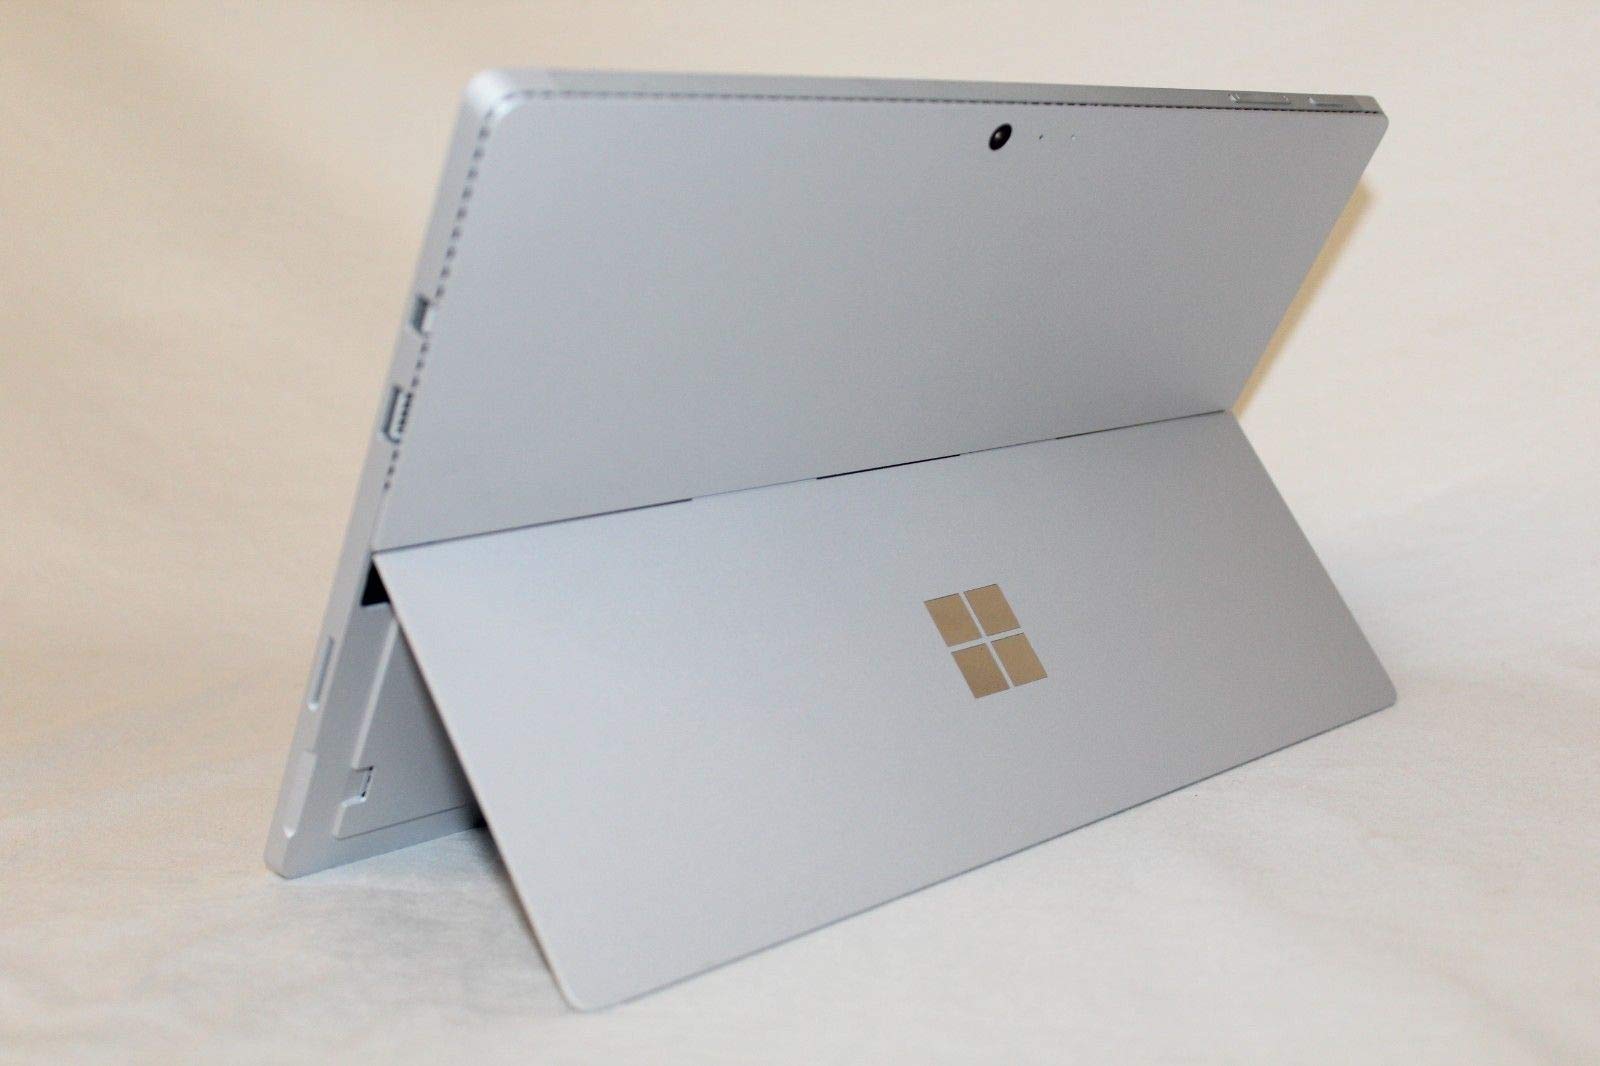 Microsoft Surface Pro 4; 256 GB, 8 GB RAM, Intel Core i5 (Renewed)